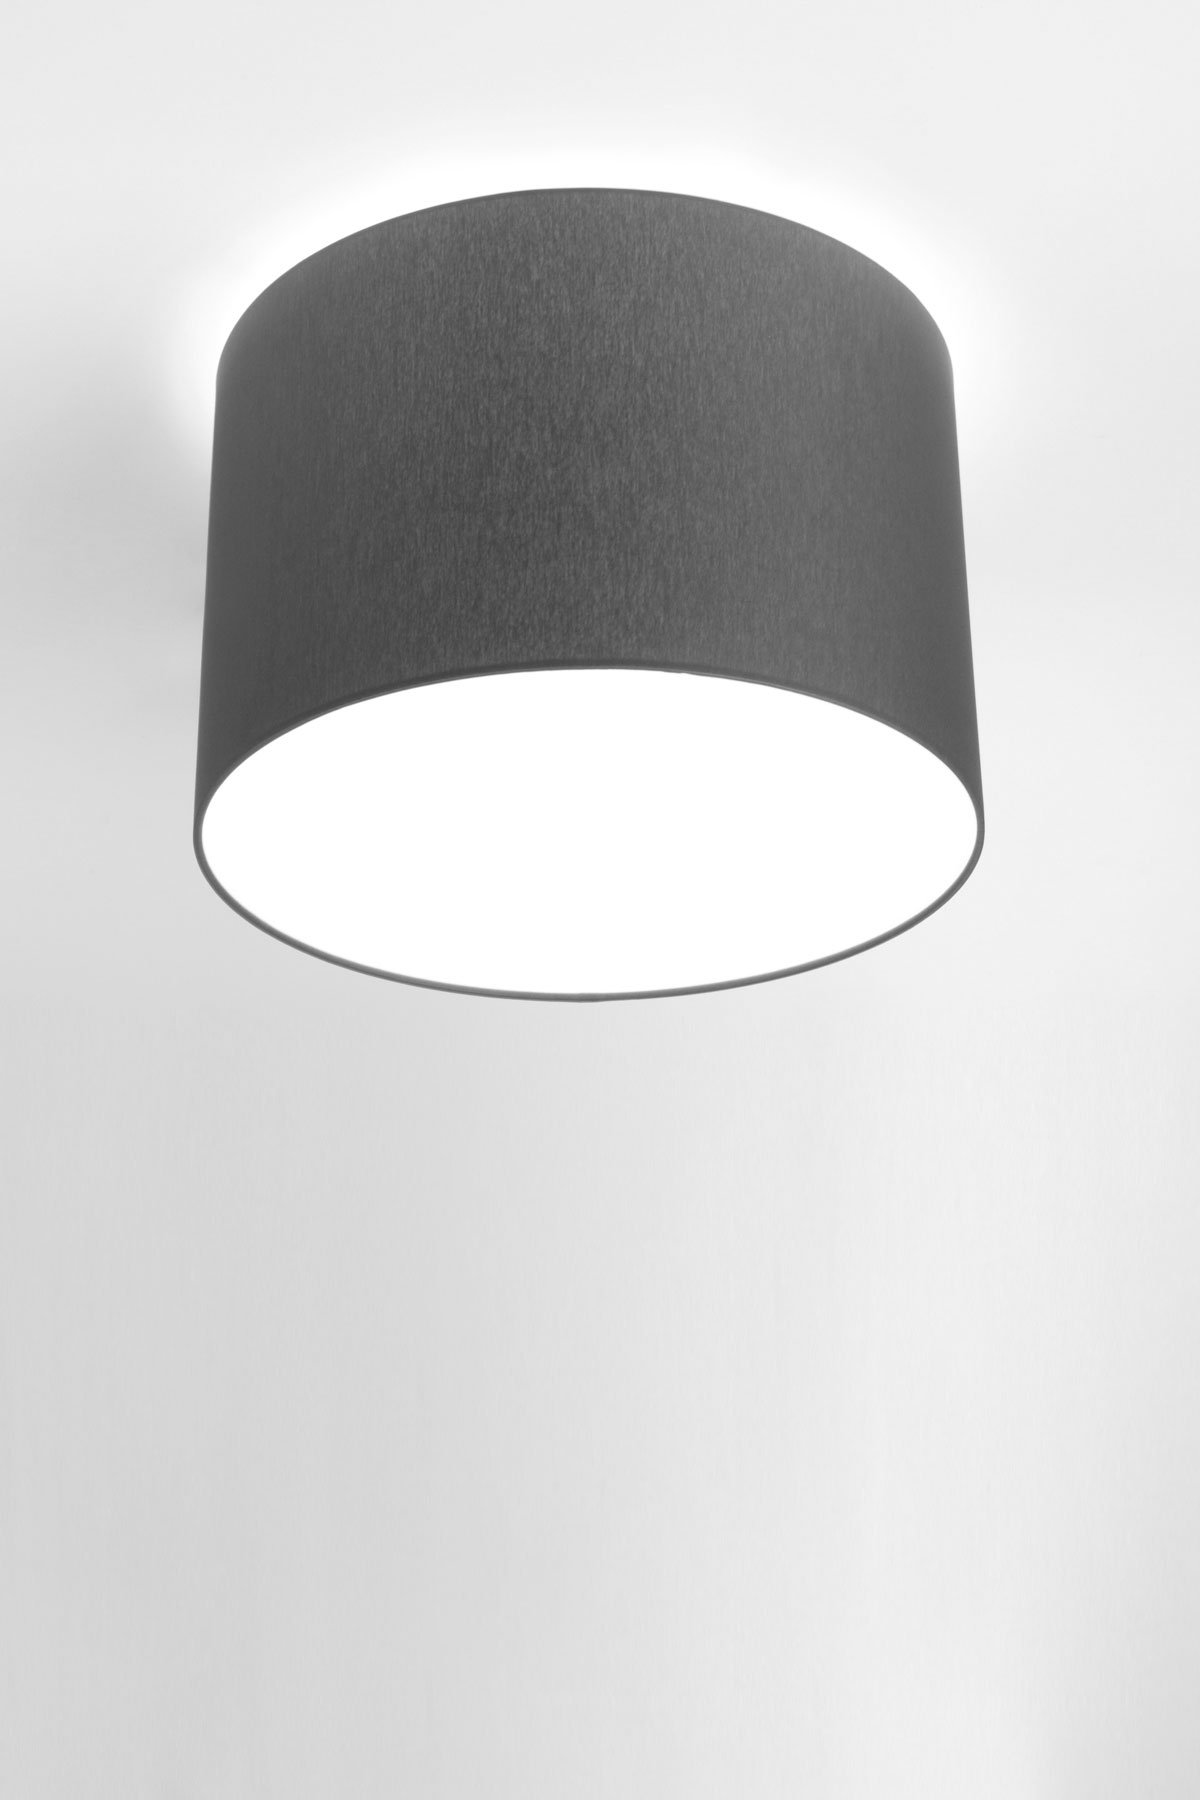   
                        Світильник стельовий NOWODVORSKI (Польща) 93048    
                         у стилі модерн.  
                        Тип джерела світла: cвітлодіодні led, енергозберігаючі, розжарювання.                         Форма: коло.                         Кольори плафонів і підвісок: сірий.                         Матеріал: пластик, тканина.                          фото 1